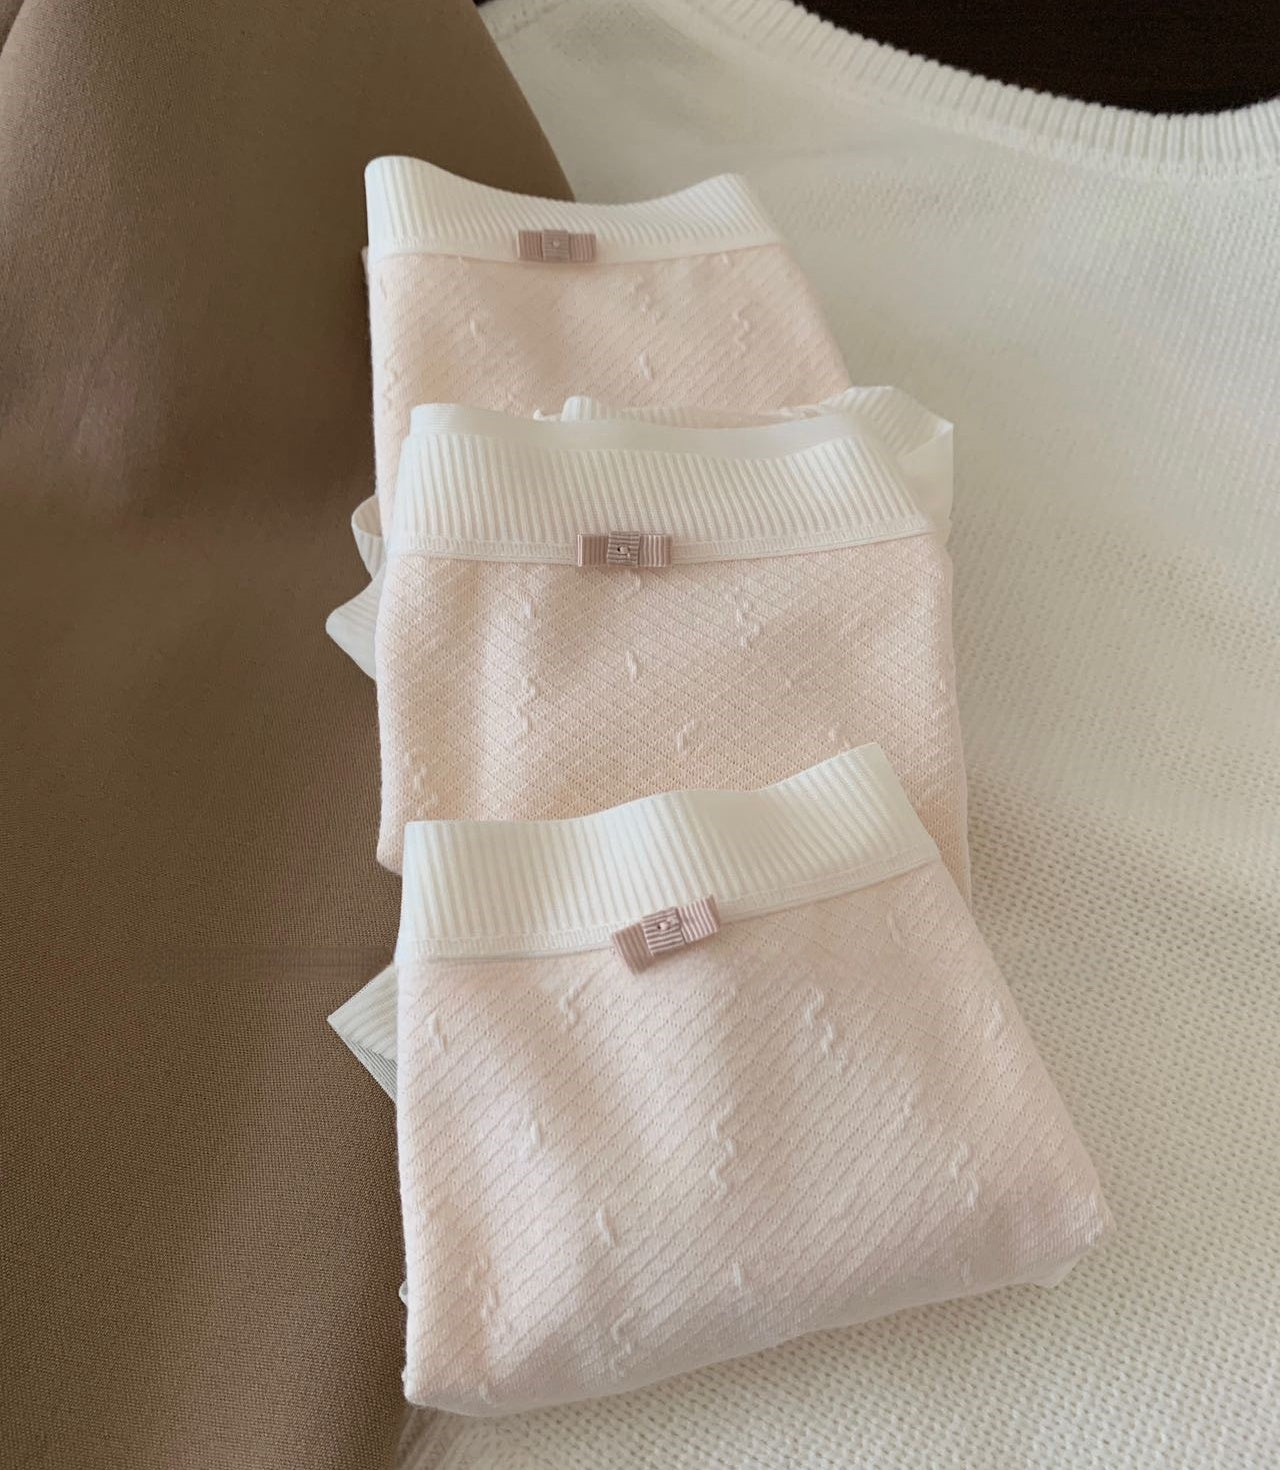 Gentle Silk Antibacterial Morandi Powder Mid-Waist Briefs (3 Packs)